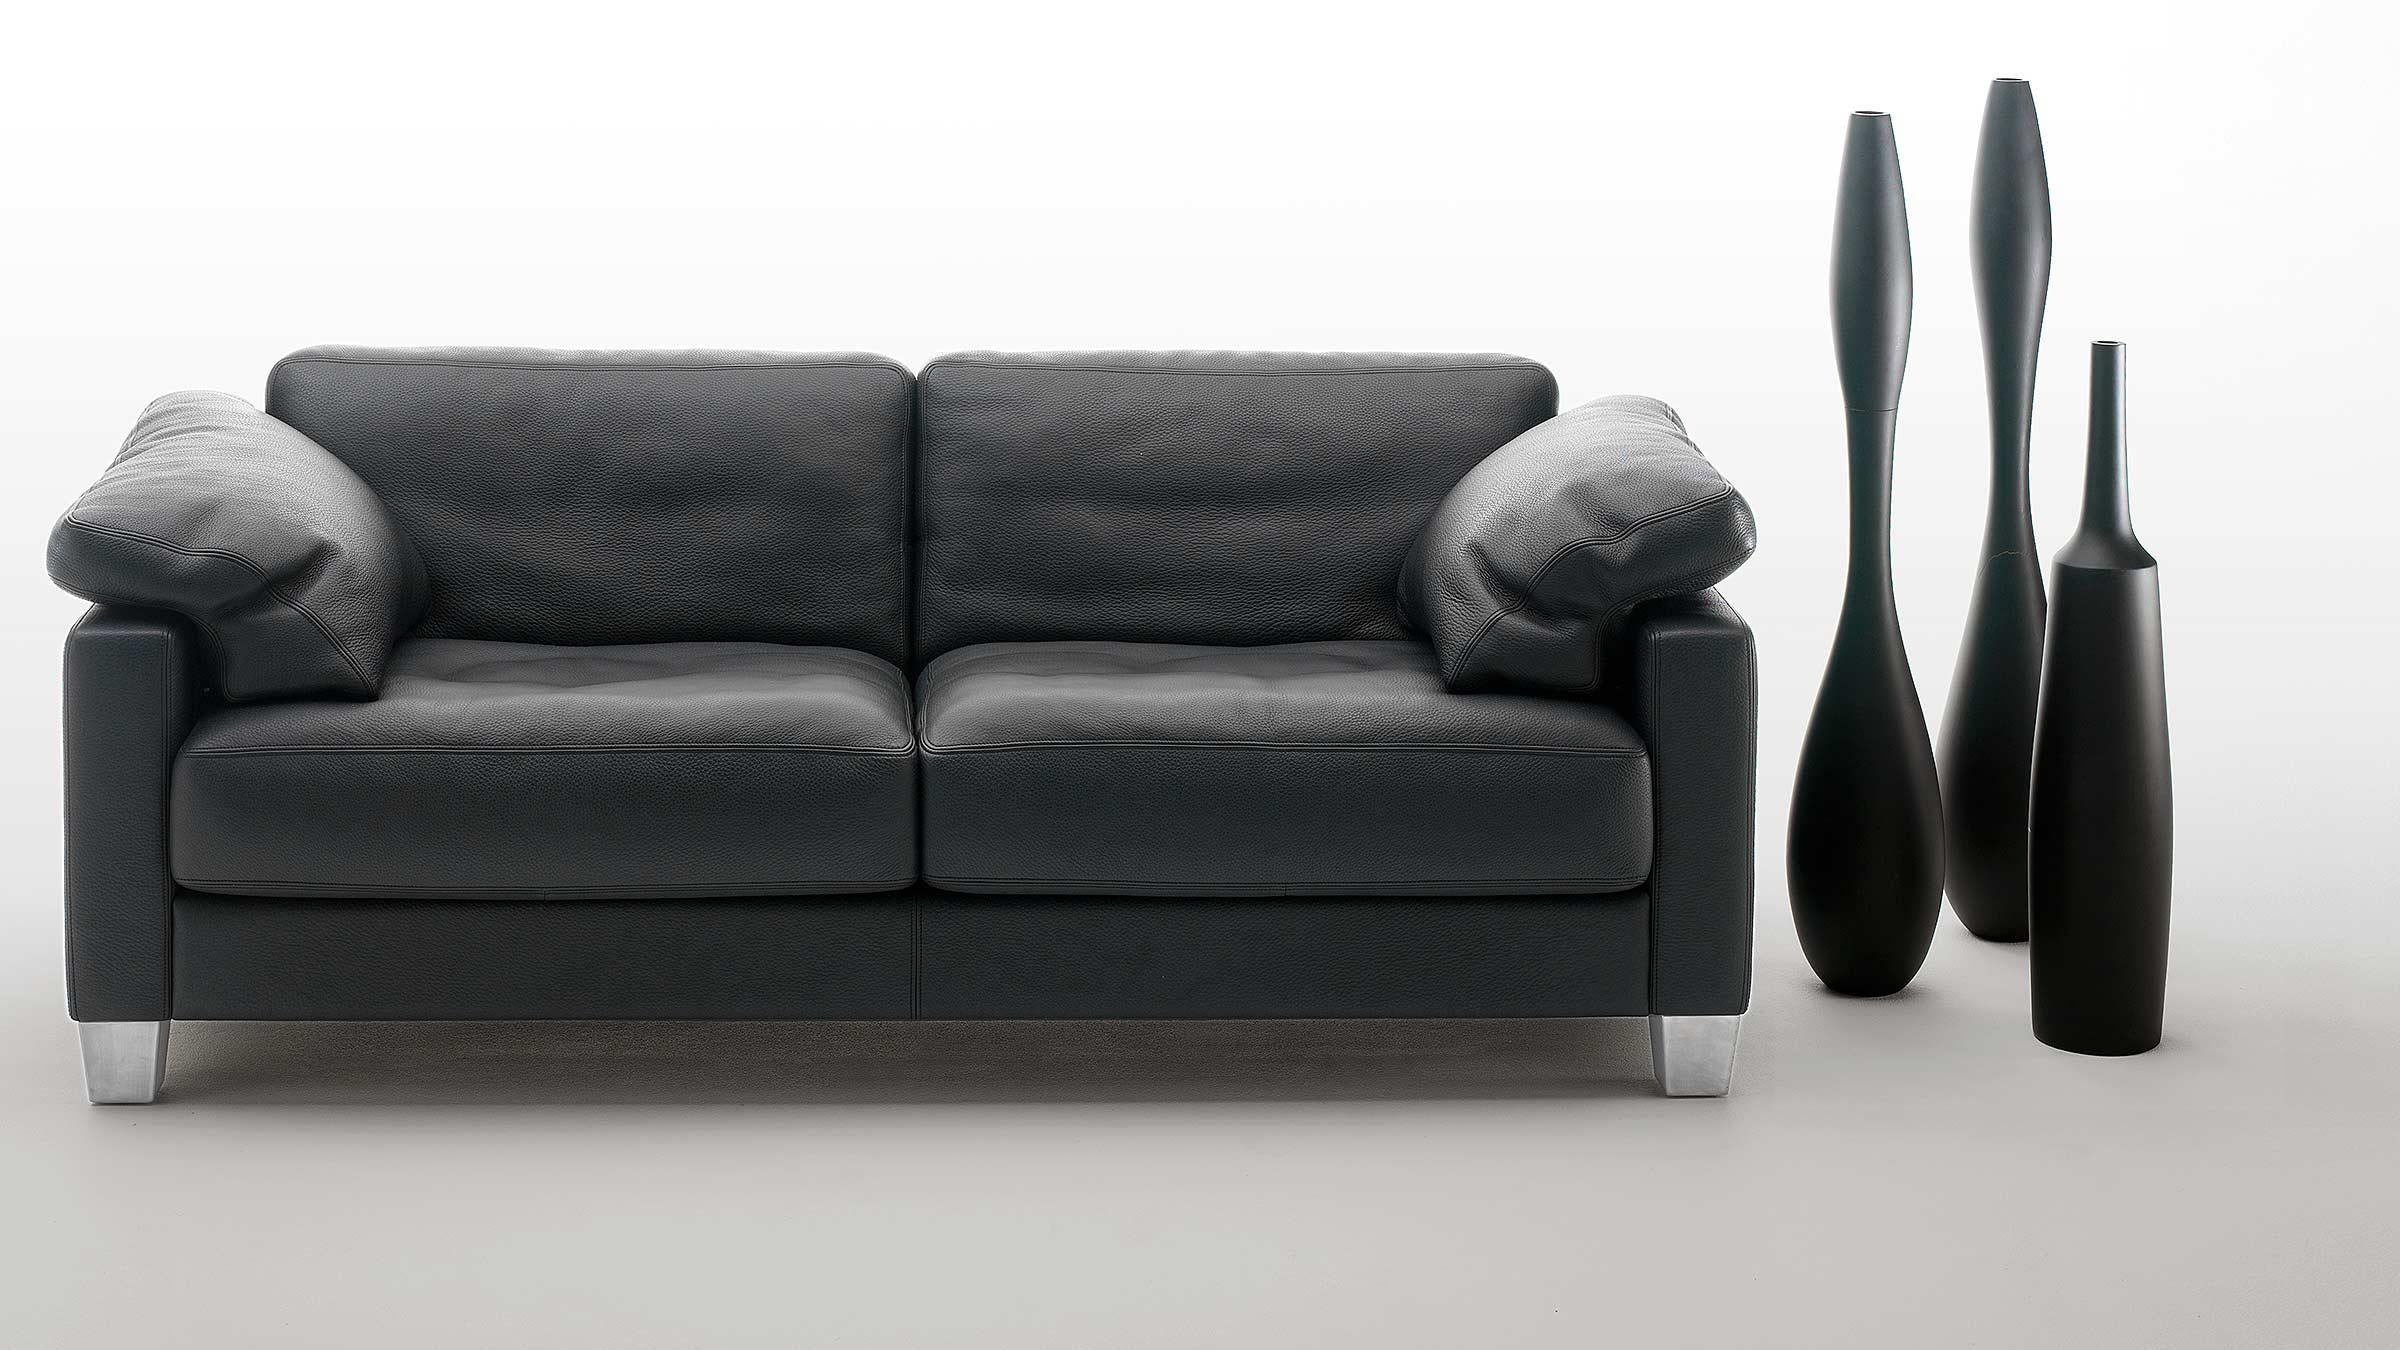 Le rembourrage ingénieux met en valeur les formes au charme nonchalant, voici le programme du canapé ! Ce canapé est un véritable maître en matière de confort d'assise. S'asseoir confortablement et récupérer dans le doux DS-17 et suivre vos rêves,